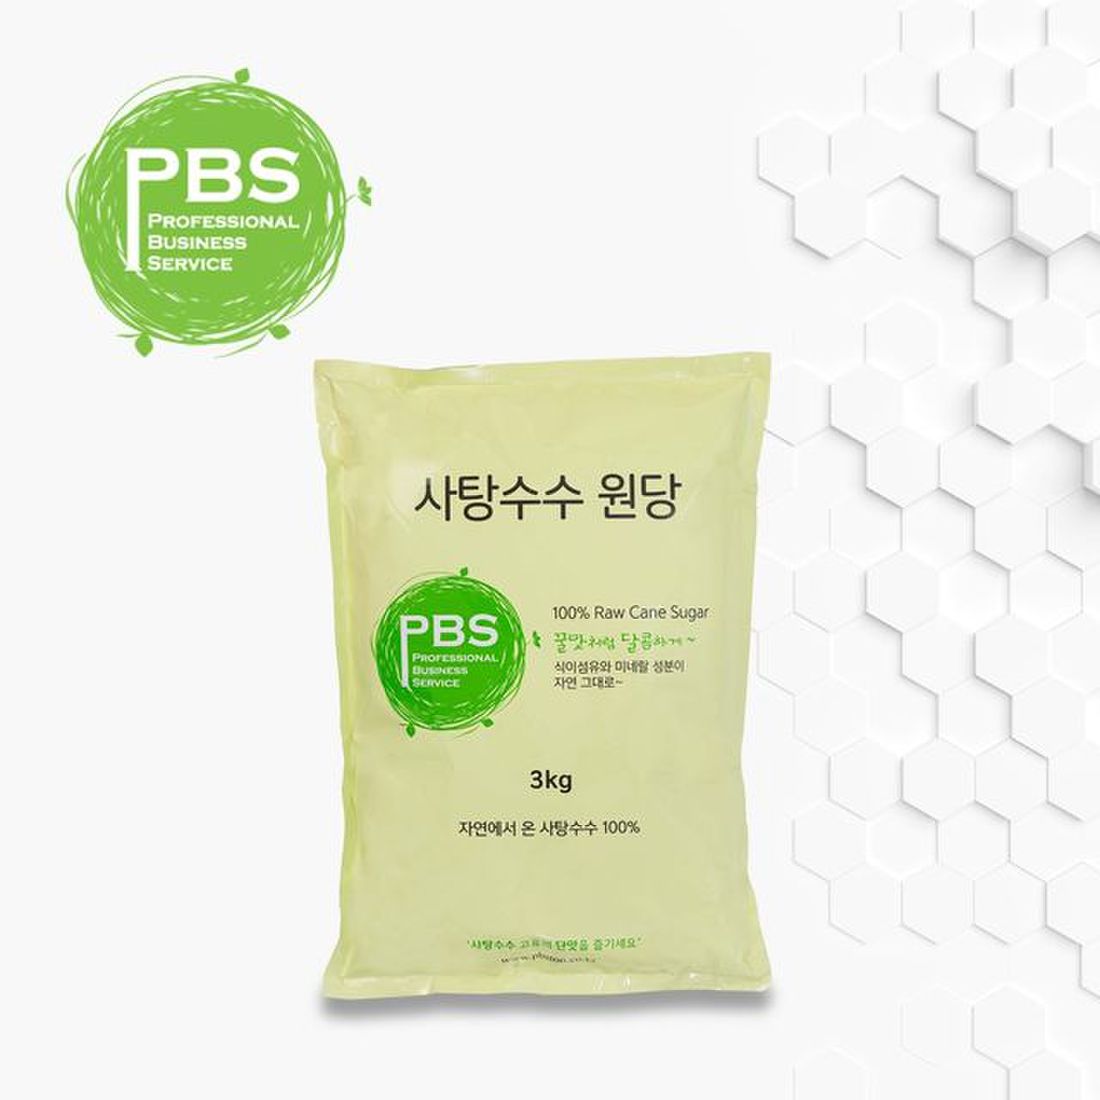 설탕 흰설탕 조미료 사탕수수원당 비정제원당 고급설탕 피비에스 PBS 3kg